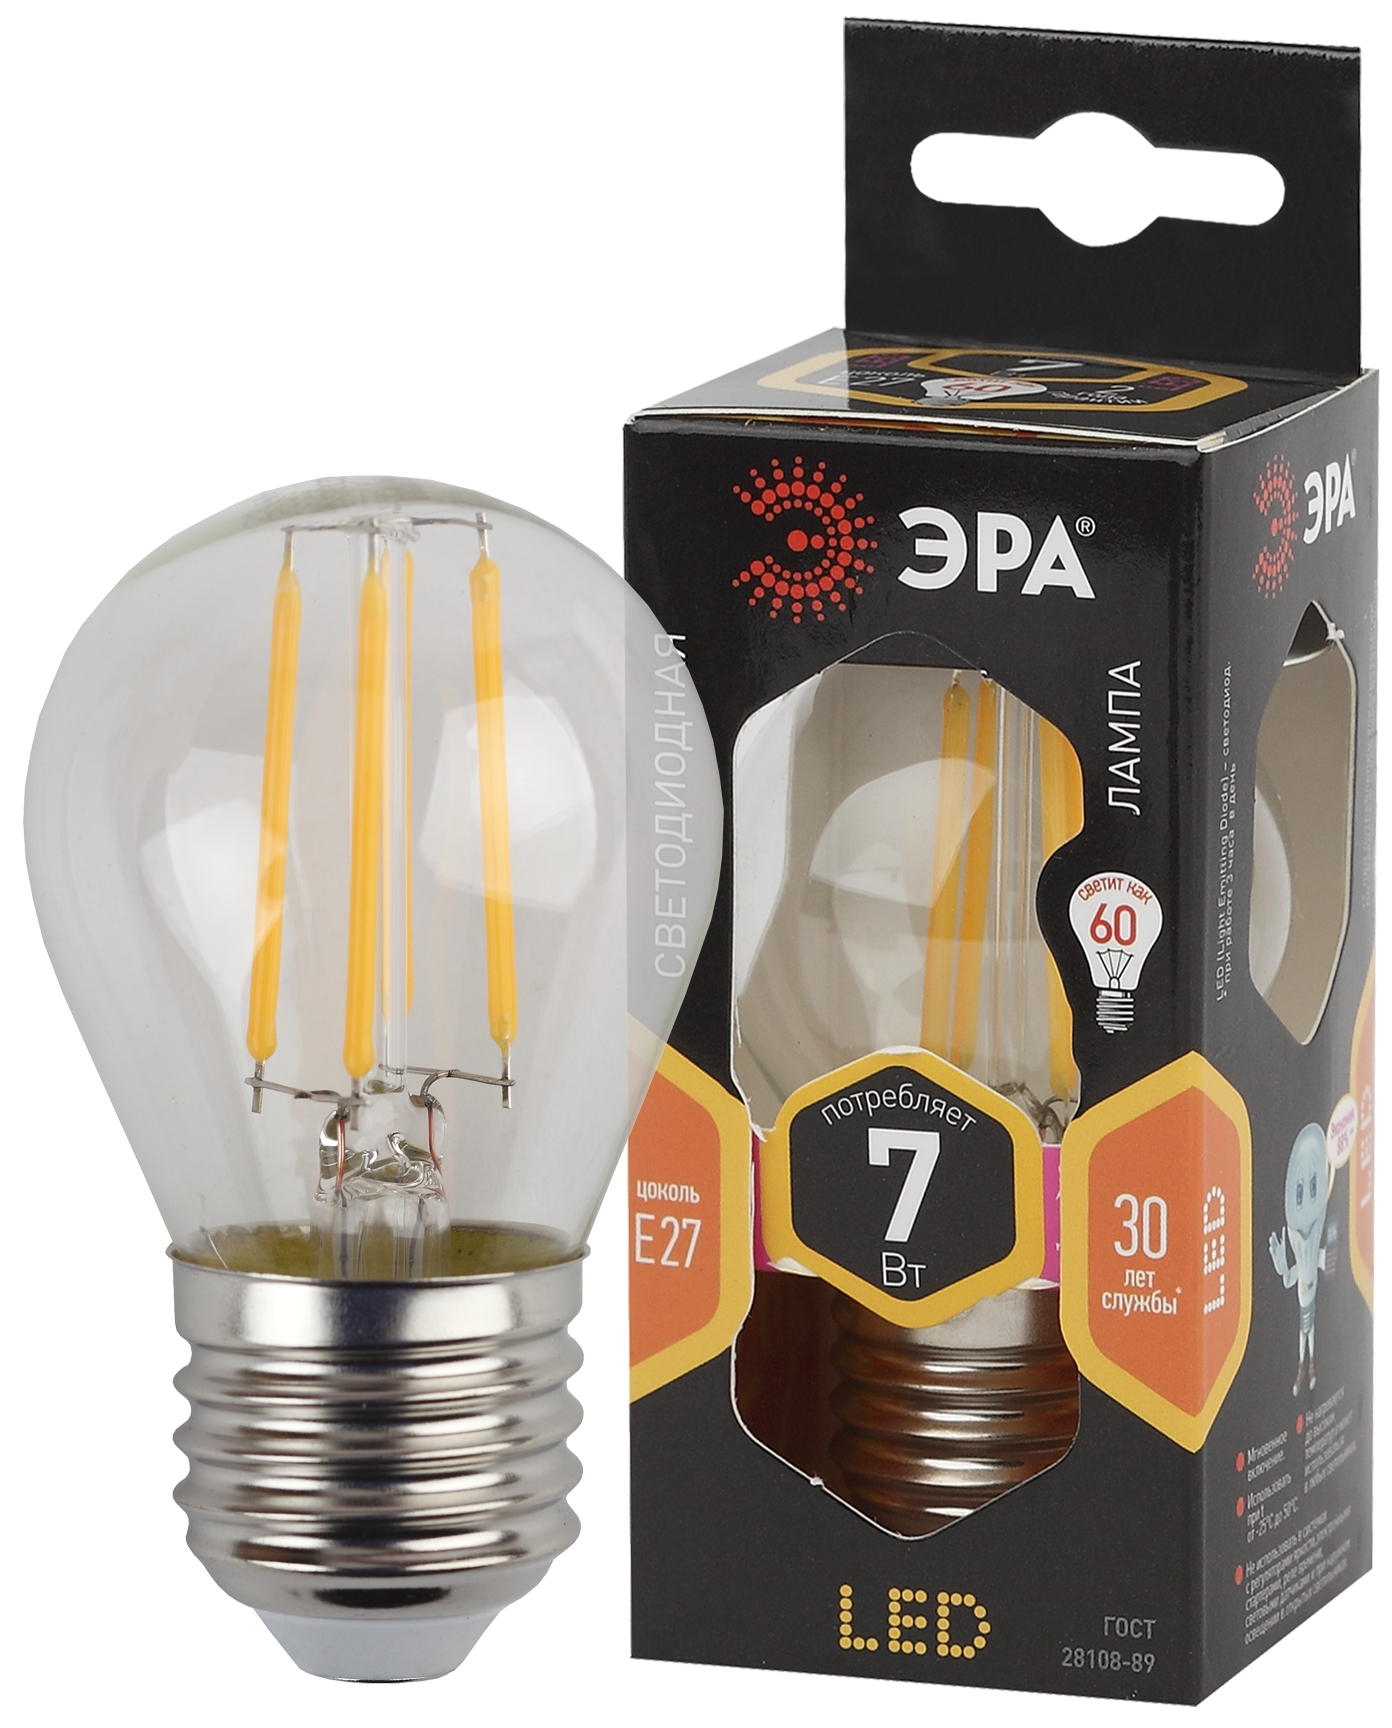 Лампочка светодиодная ЭРА F-LED P45-7W-827-E27 Е27 / Е27 7Вт филамент шар теплый белый свет